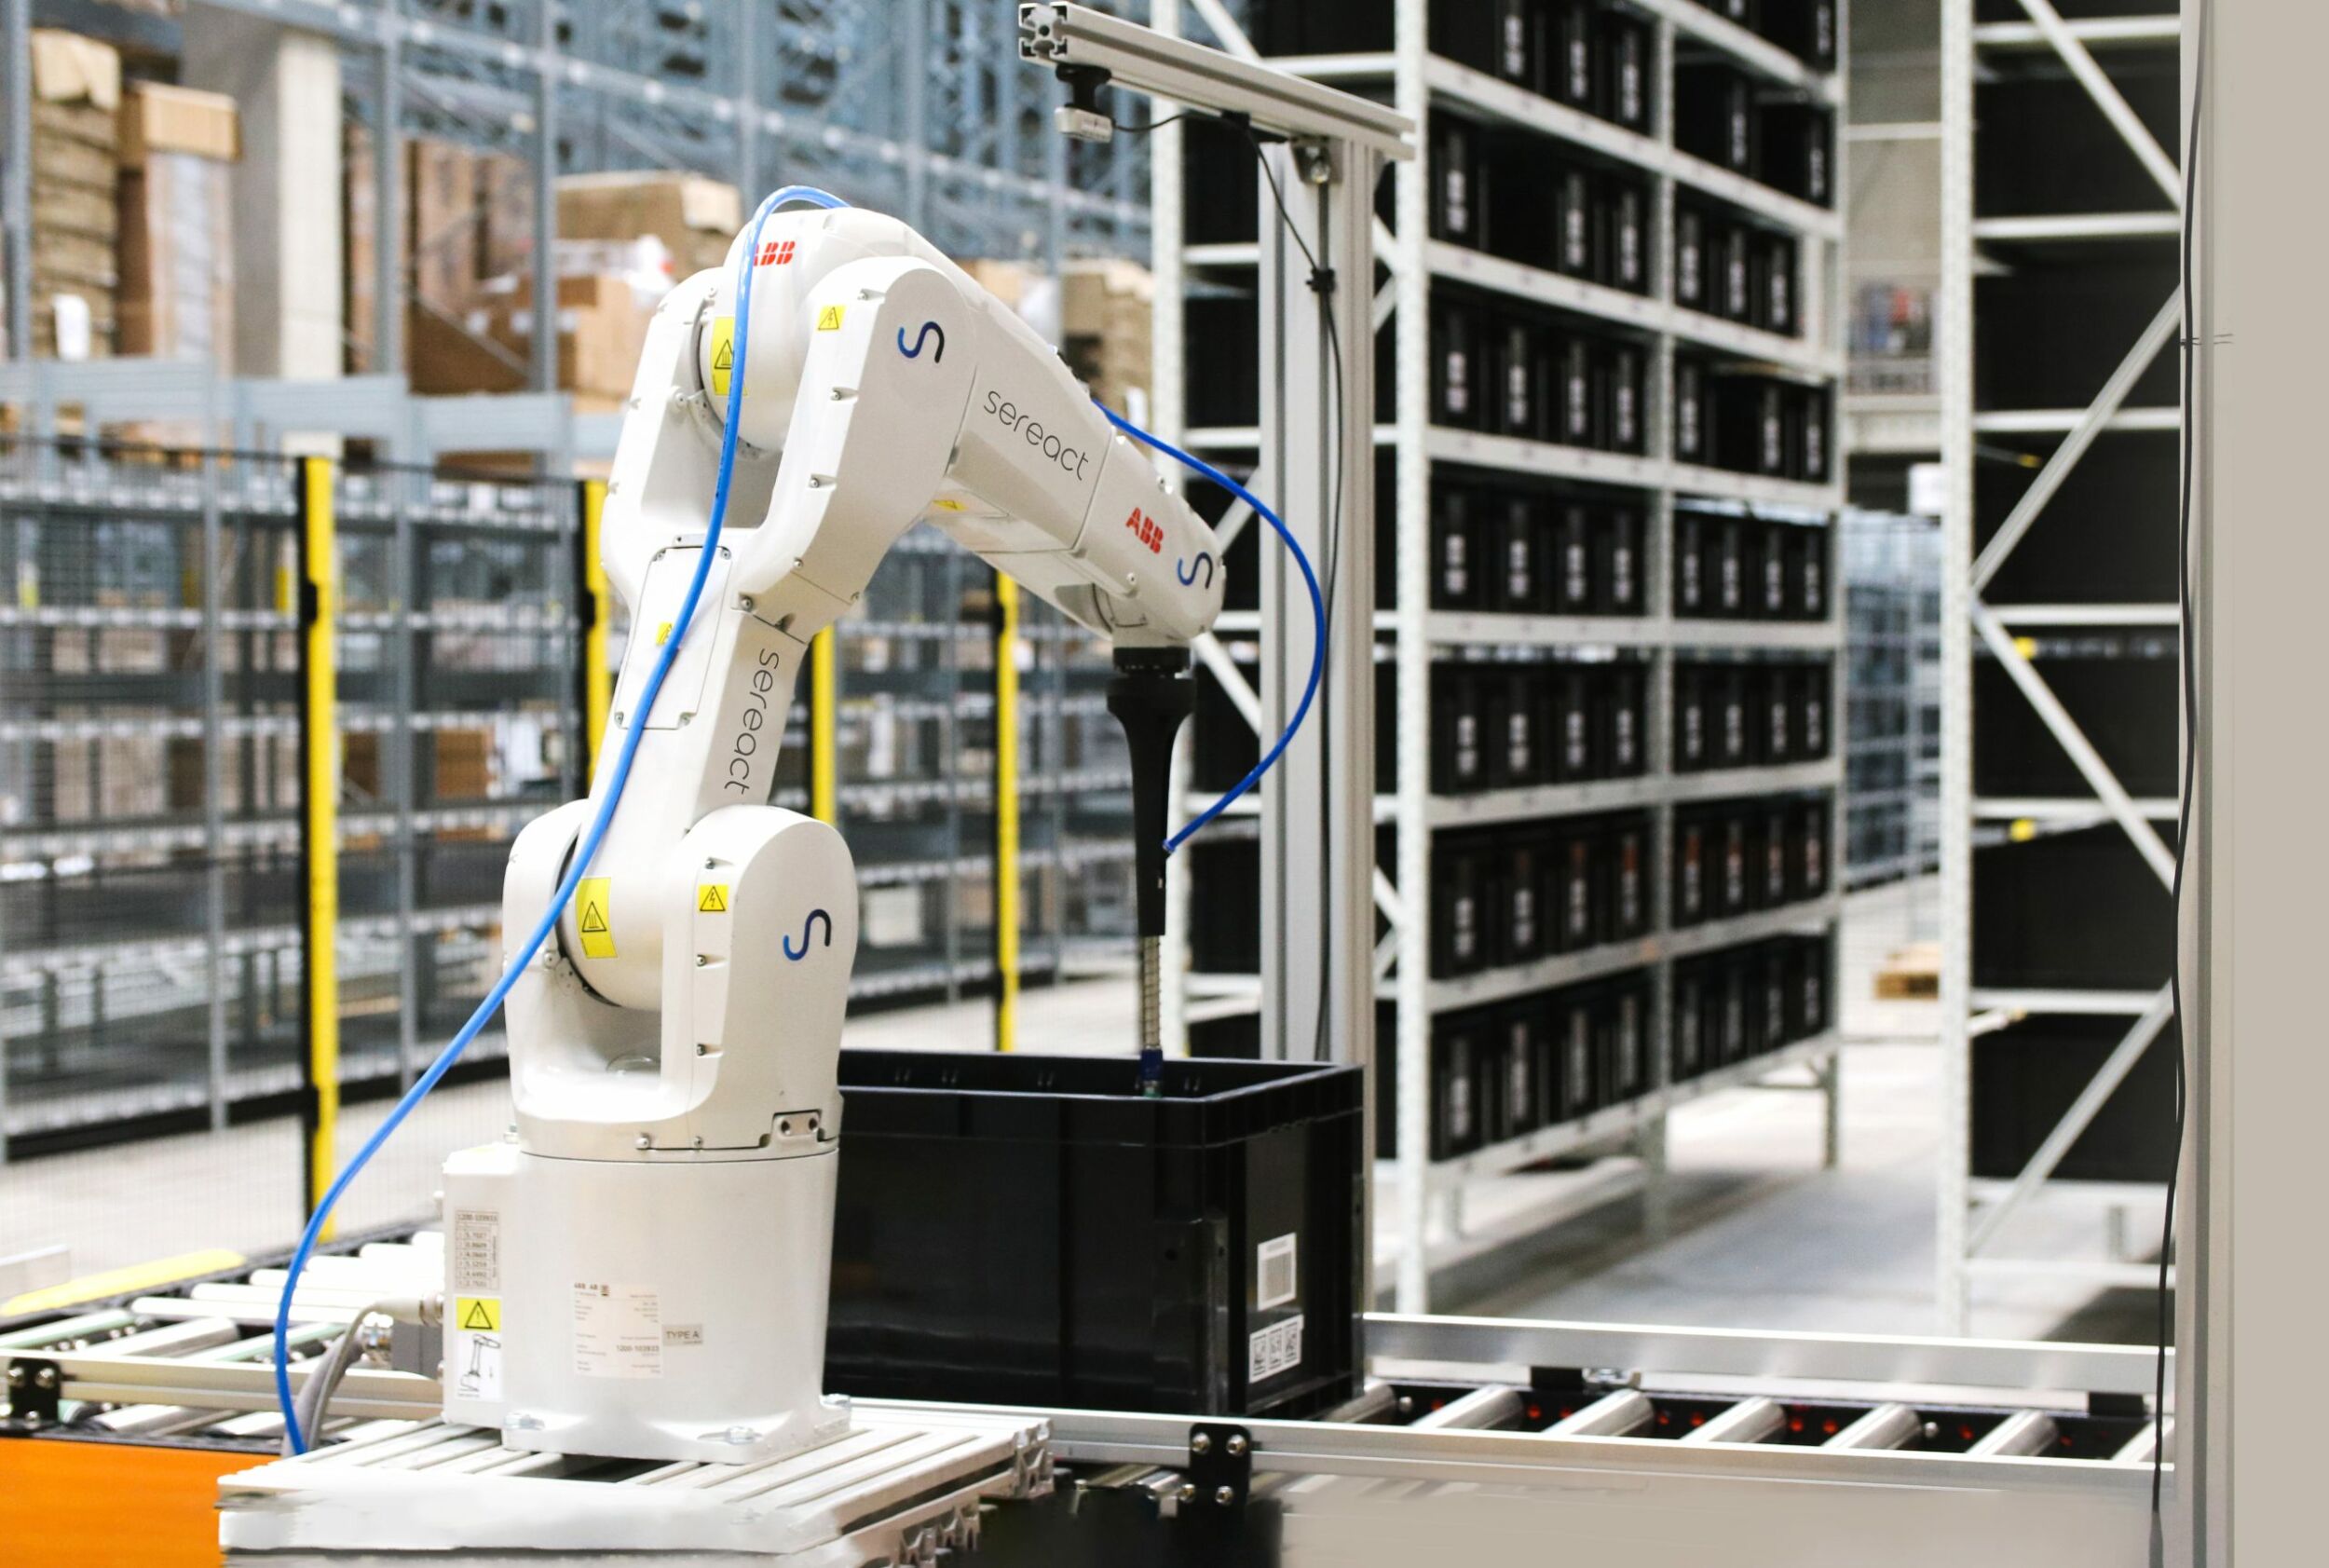 Die KI-gestütze Robotik-Software von Sereact automatisiert Kommissionier- und Packprozesse vollständig. (Bild: Sereact GmbH)